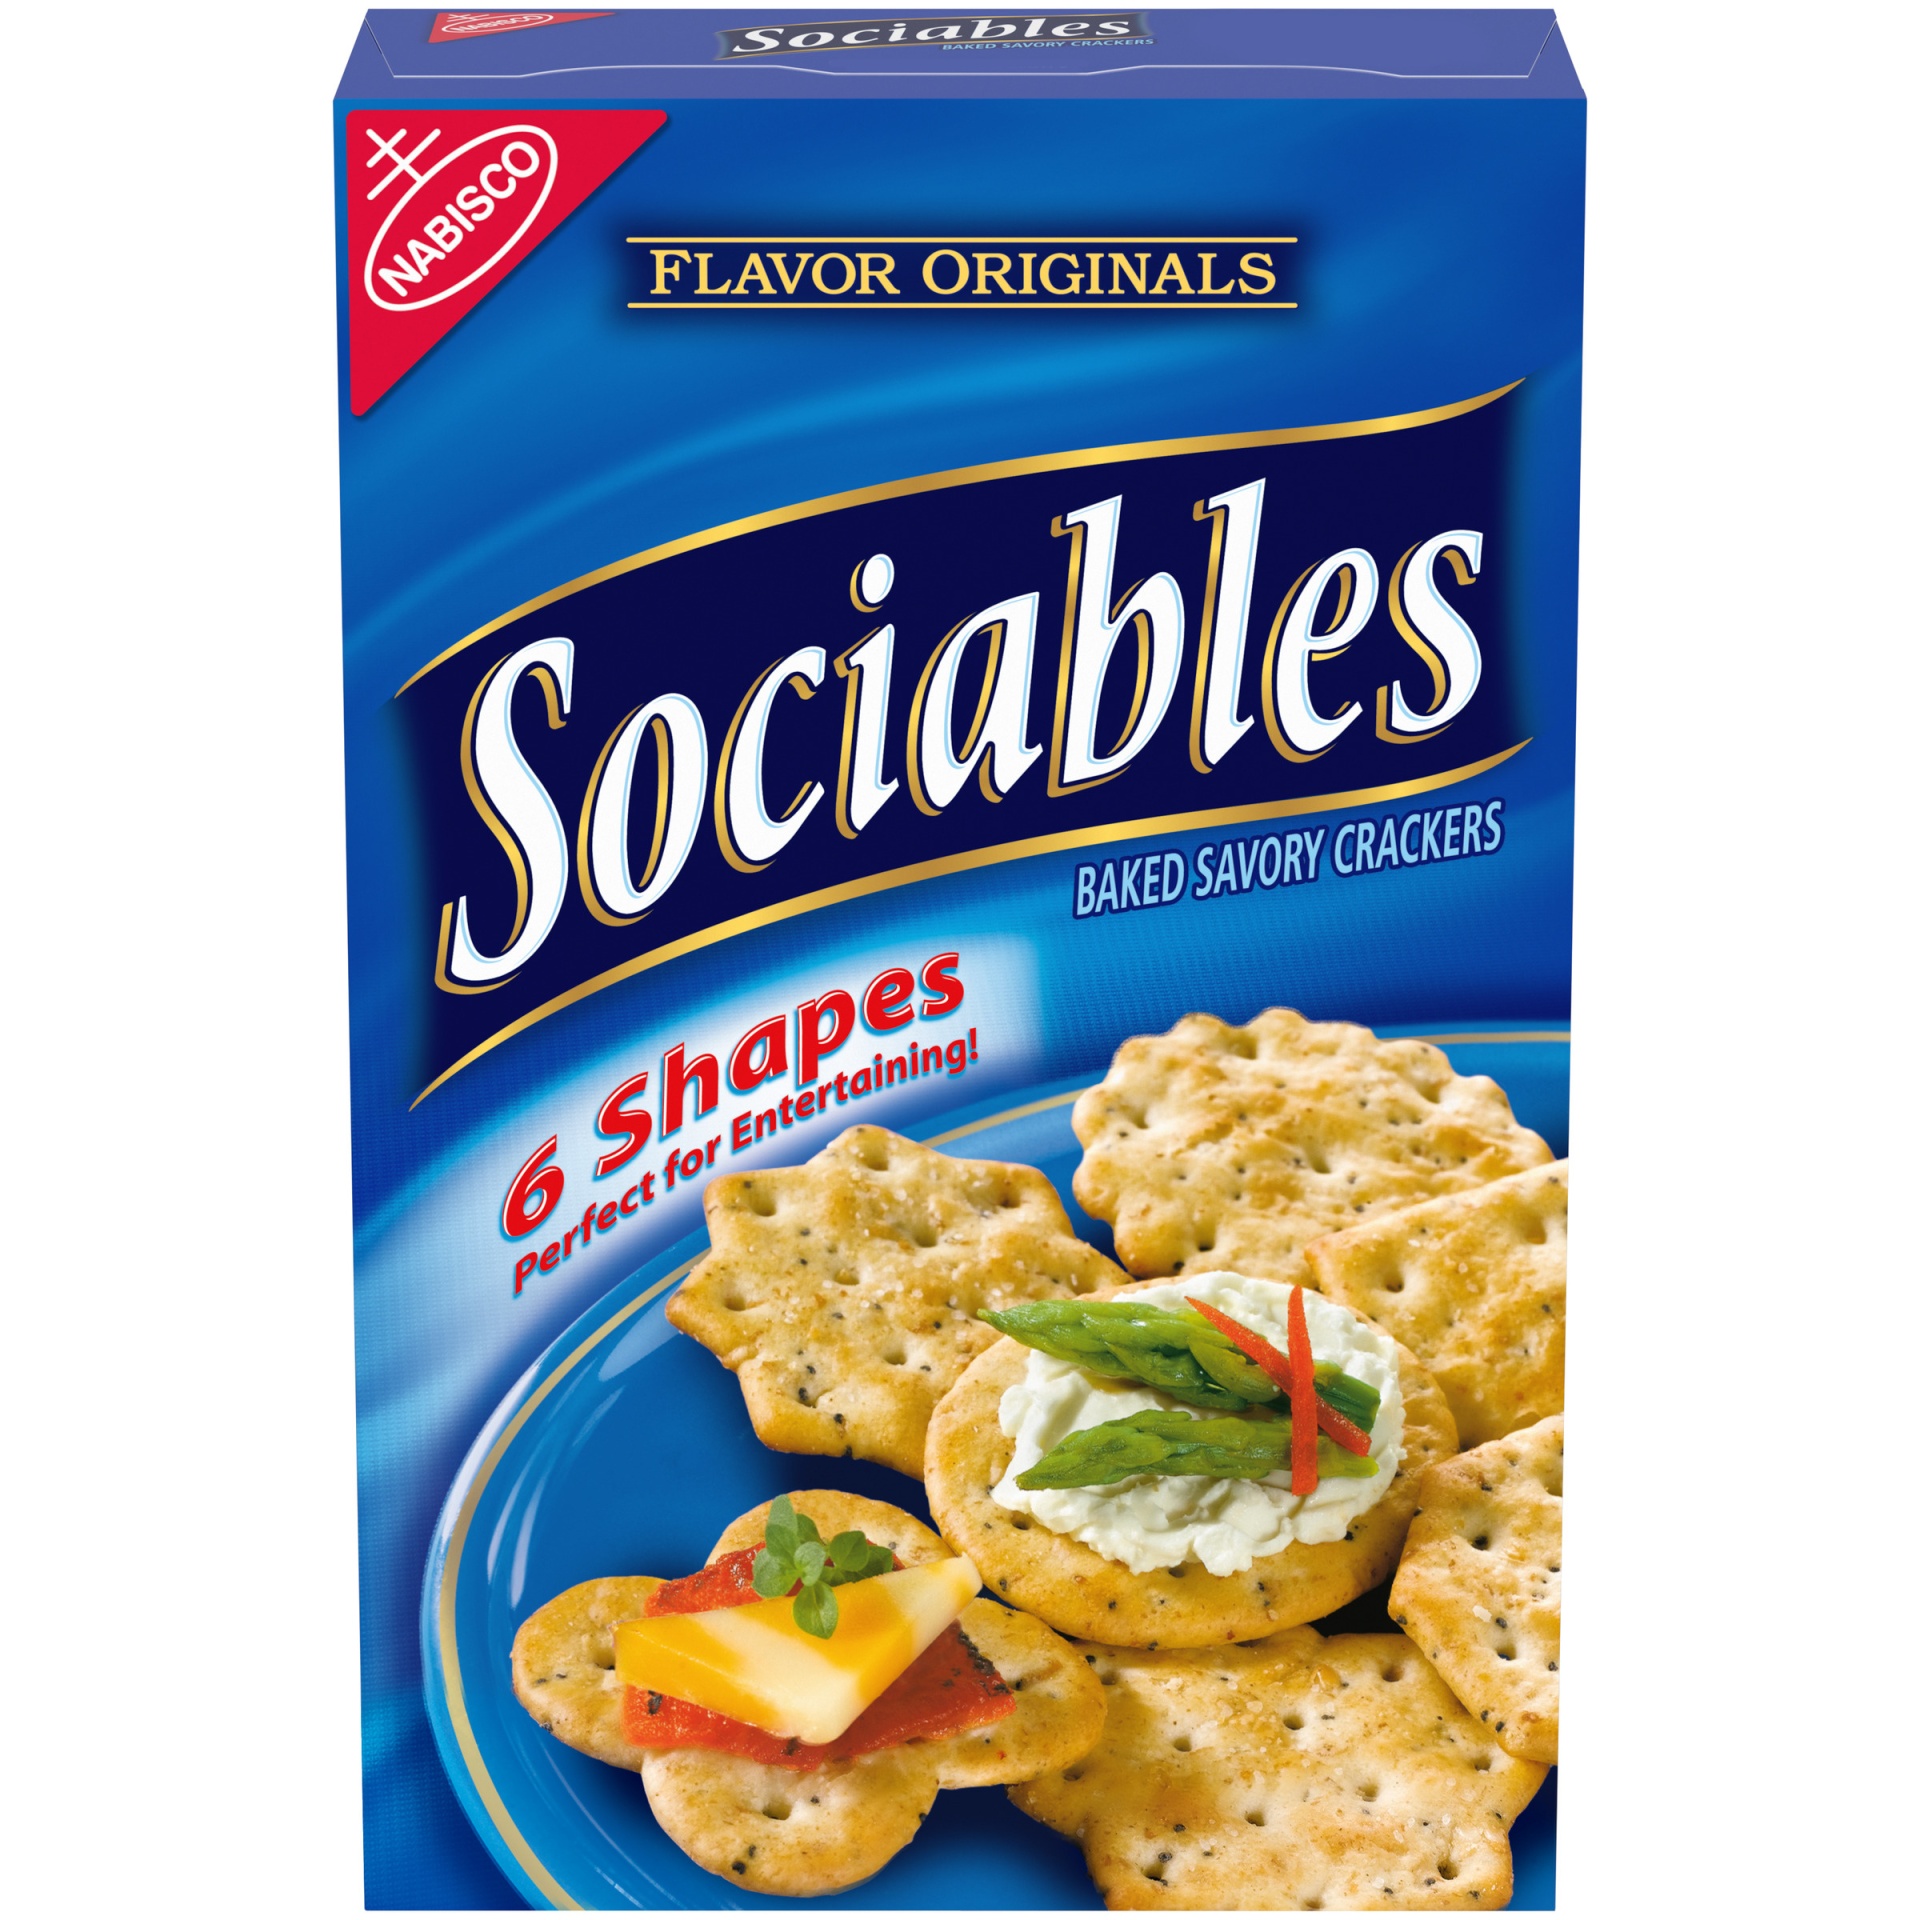 slide 1 of 3, Flavor Originals Sociables Baked Savory Crackers, 7.5 oz